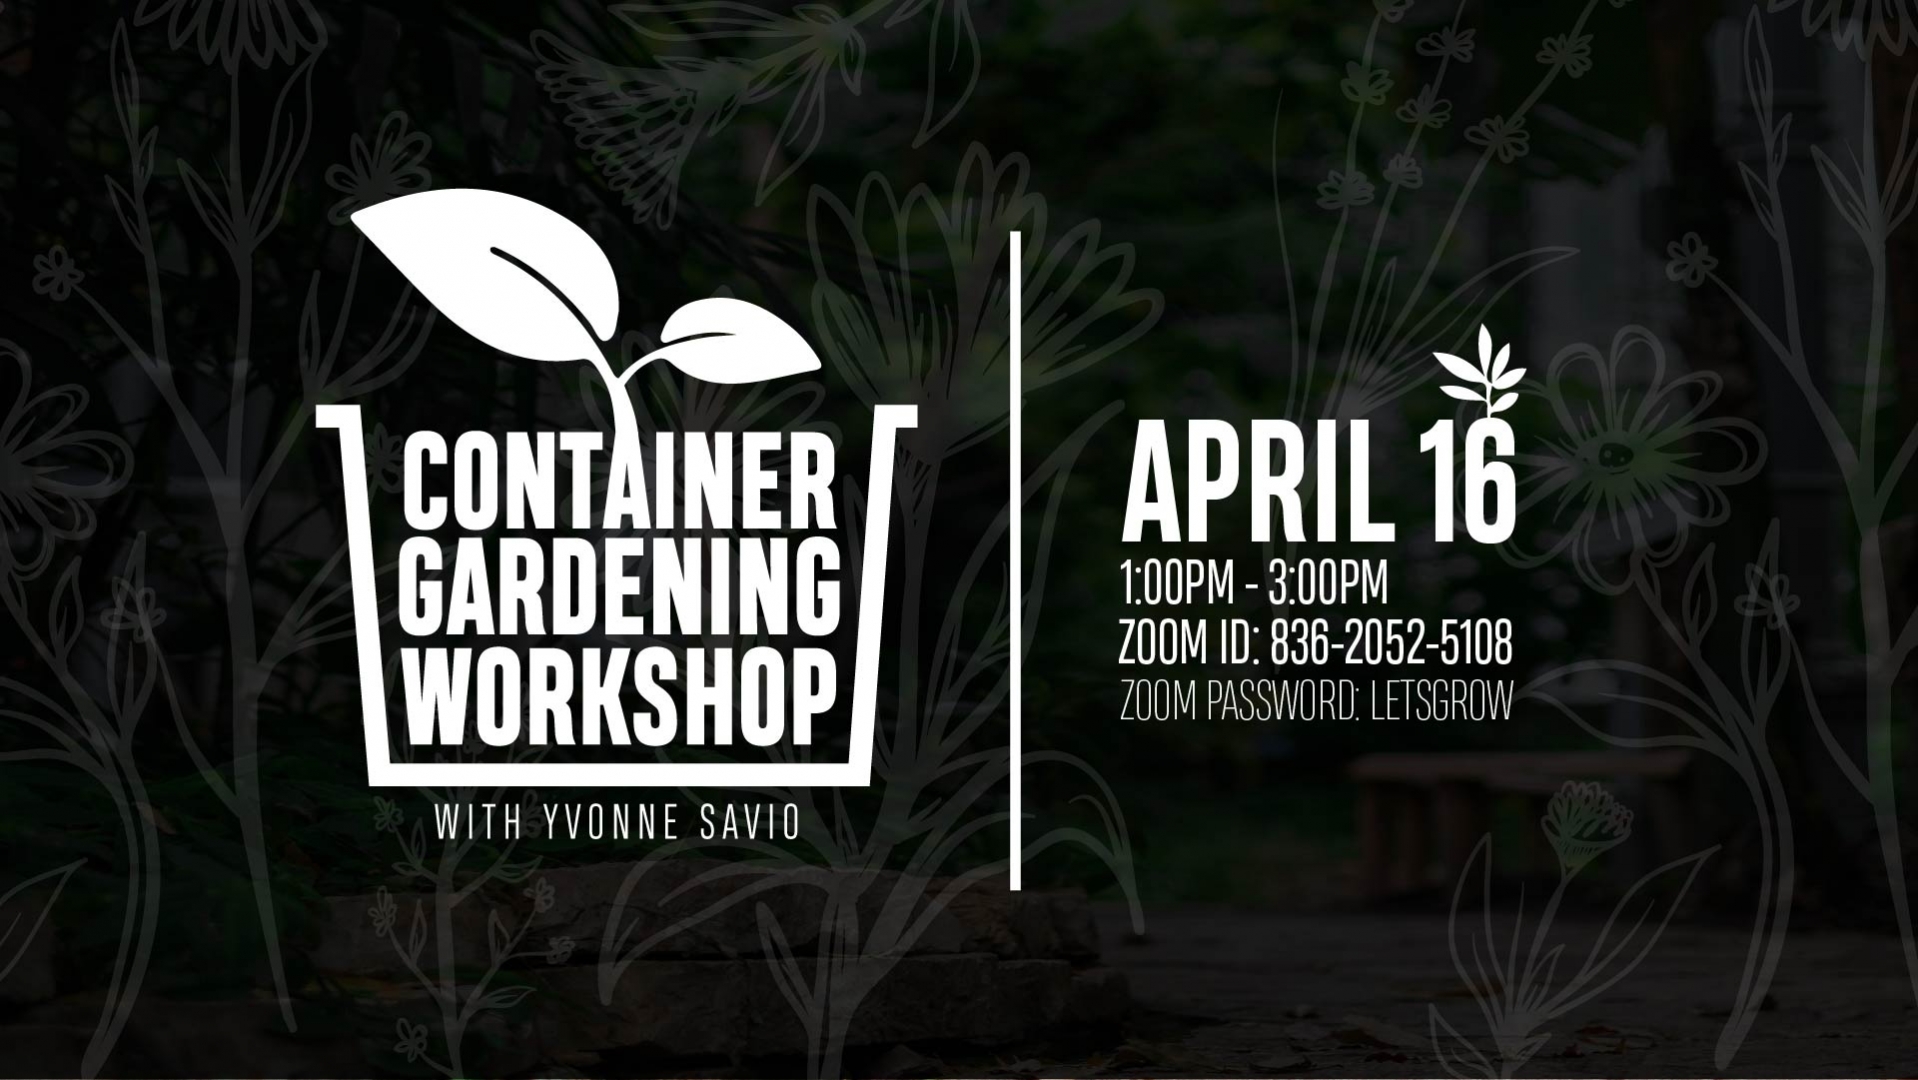 Container Gardening Workshop with Yvonne Savio